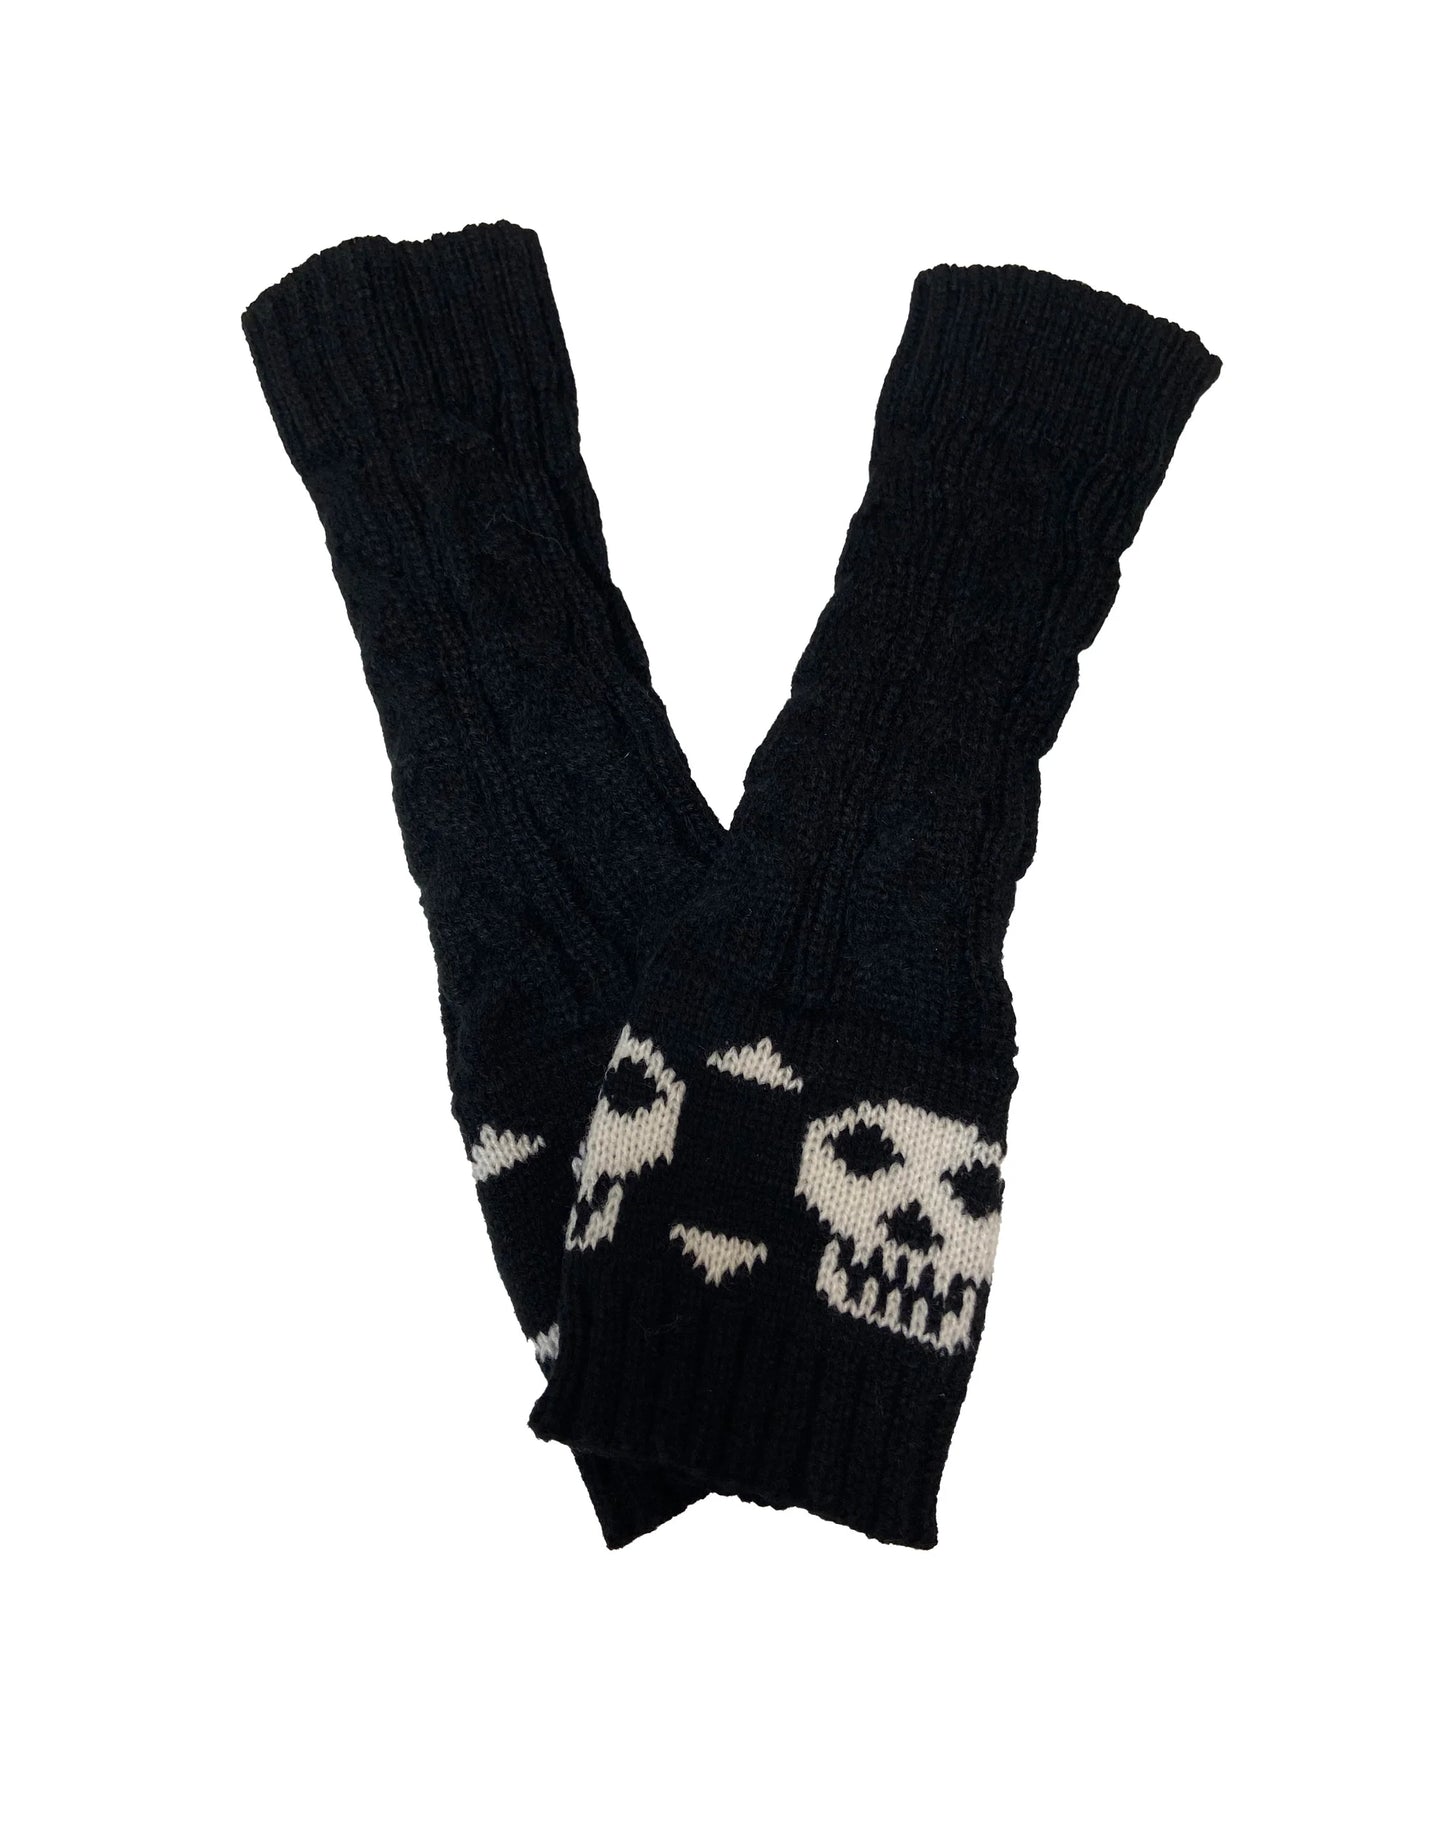 Pamela Mann Skull & Crossbone Fingerless Gloves - Black chunky knitted long fingerless arm warmer sleeves with a stylised skull and cross-bone design.